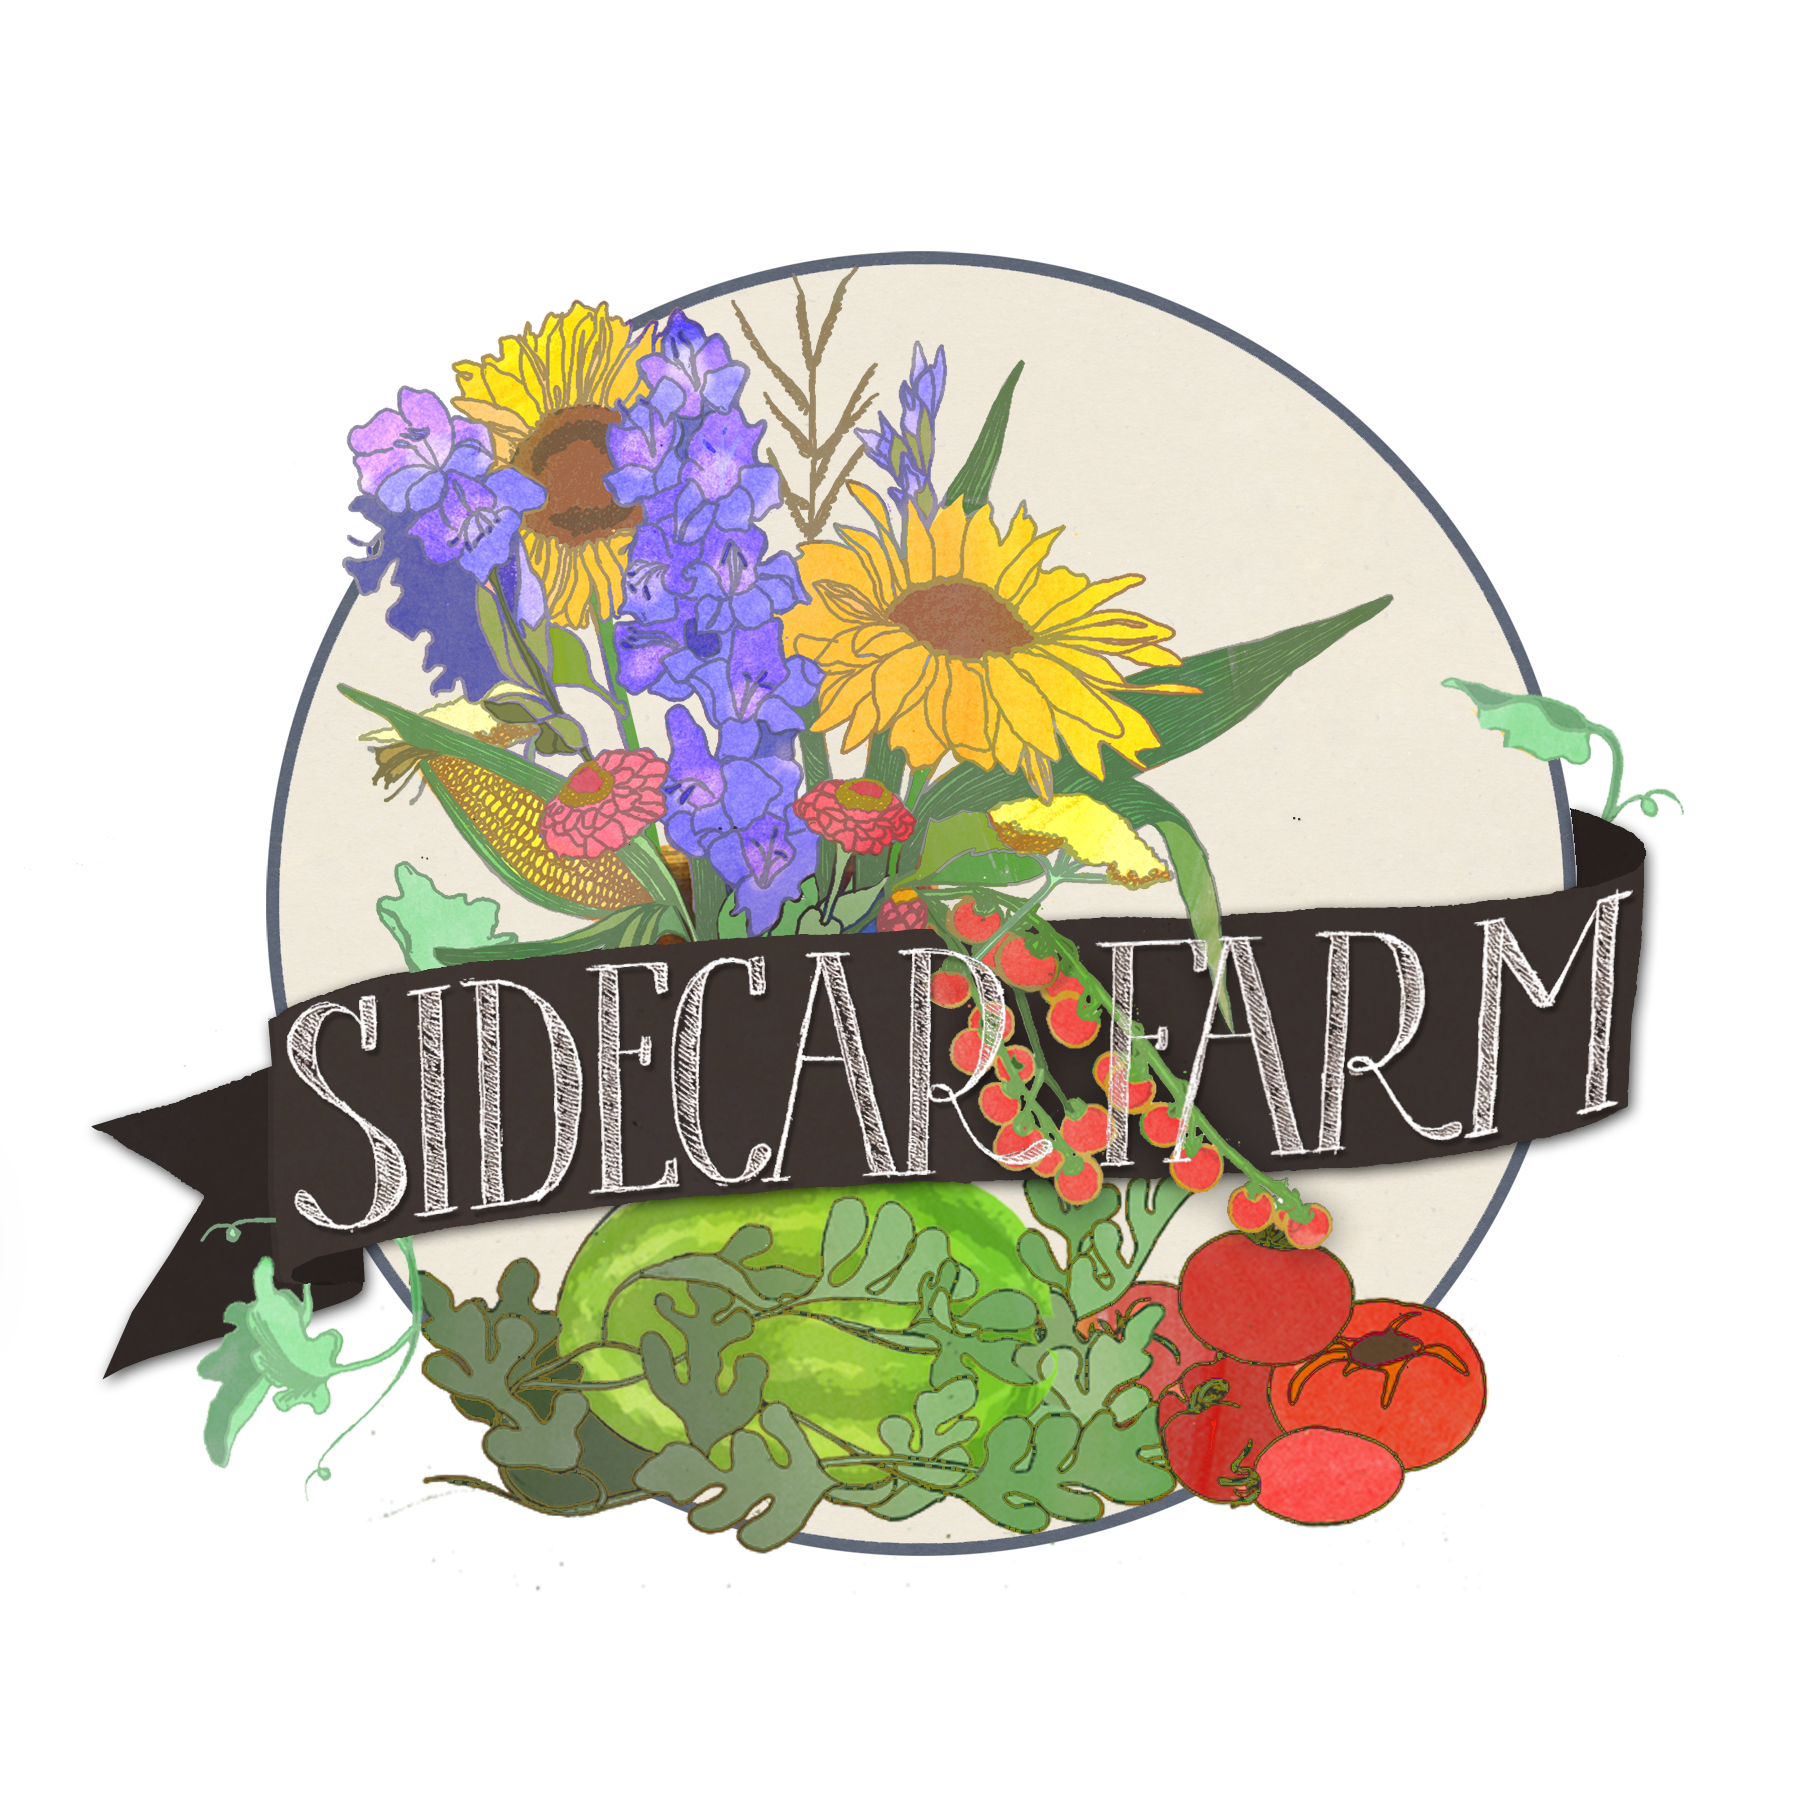 Sidecar Farm